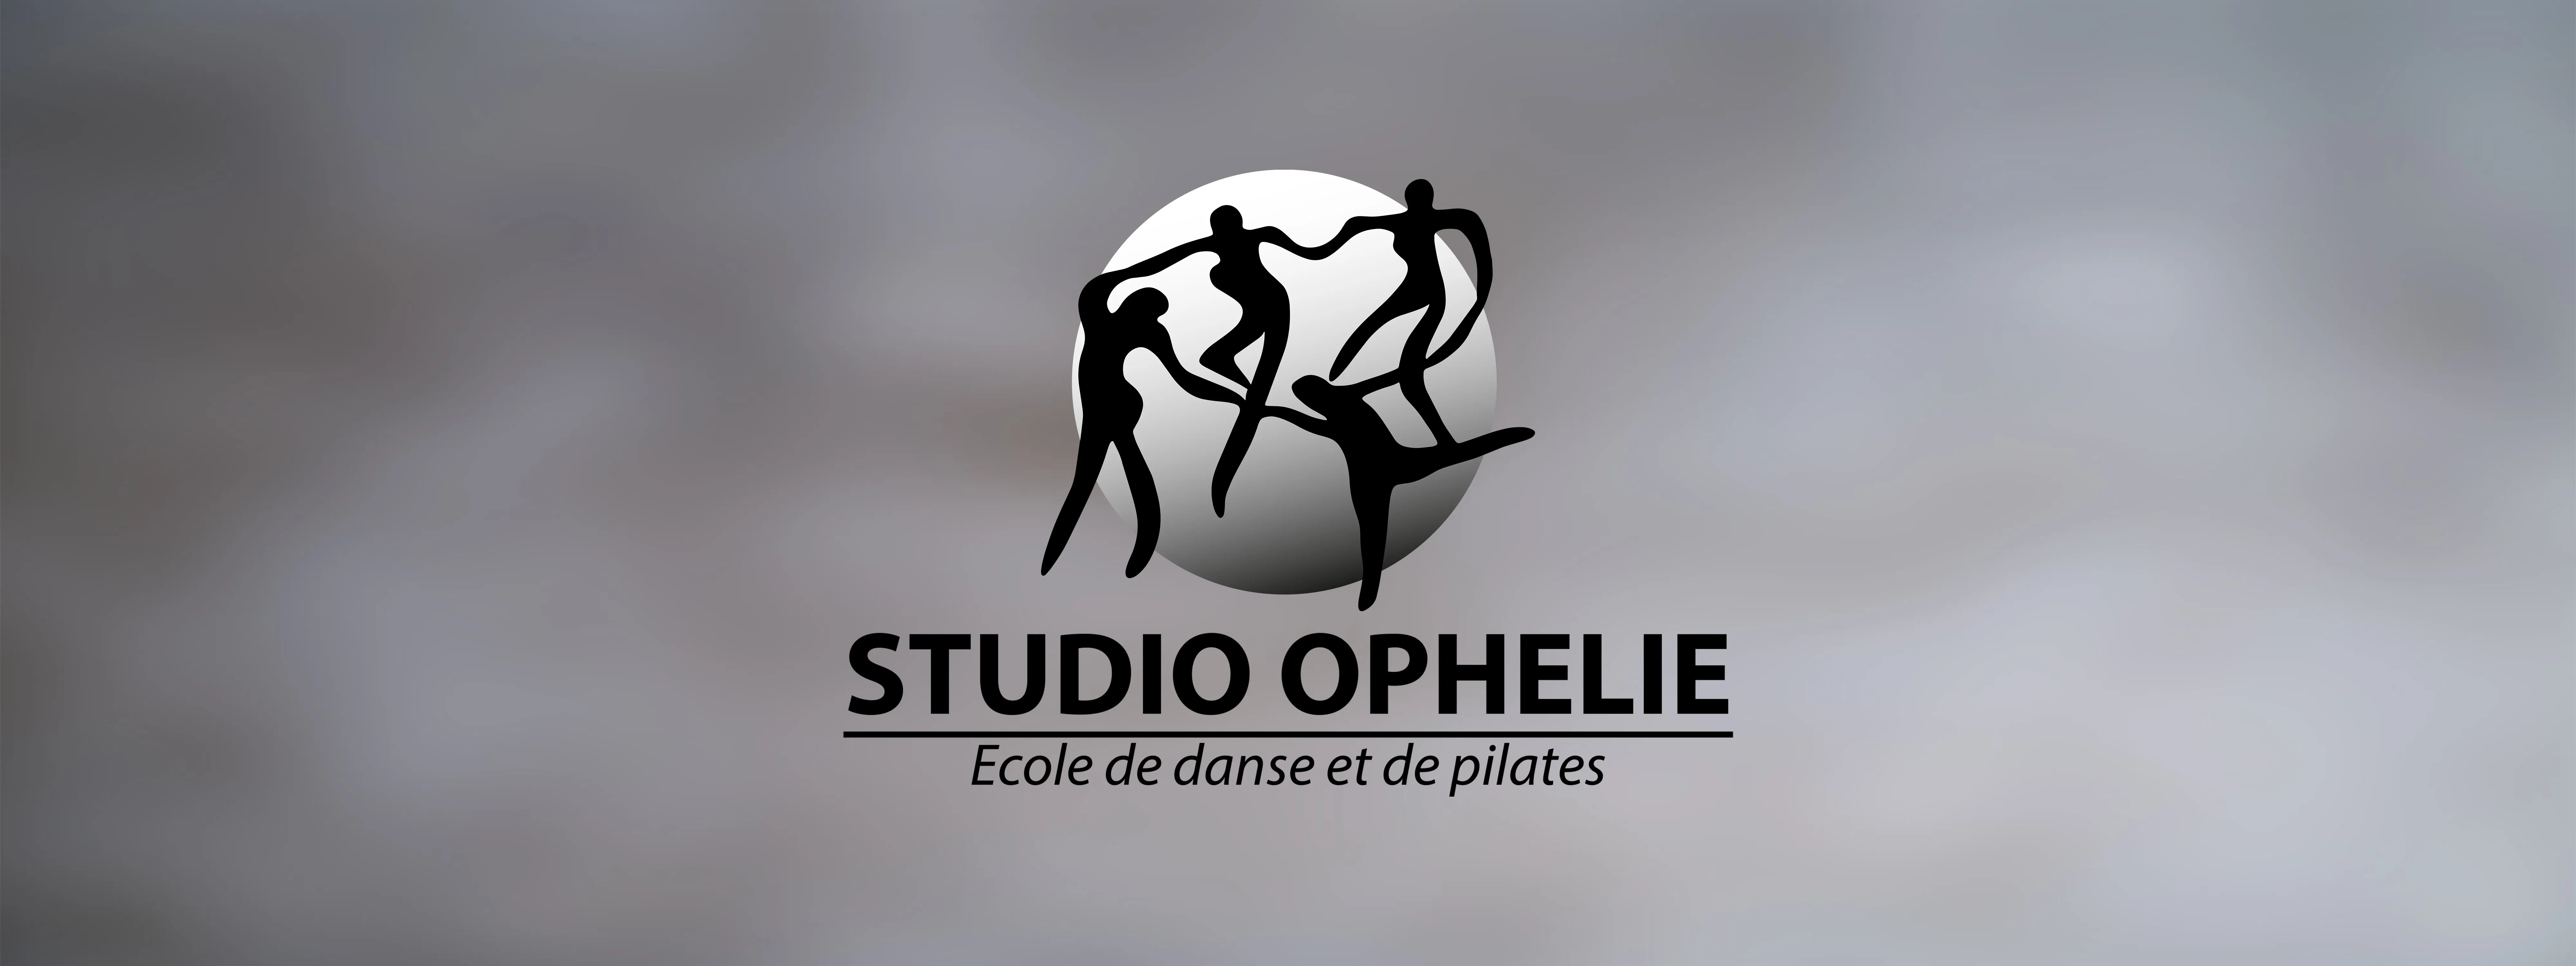 Studio Ophelie